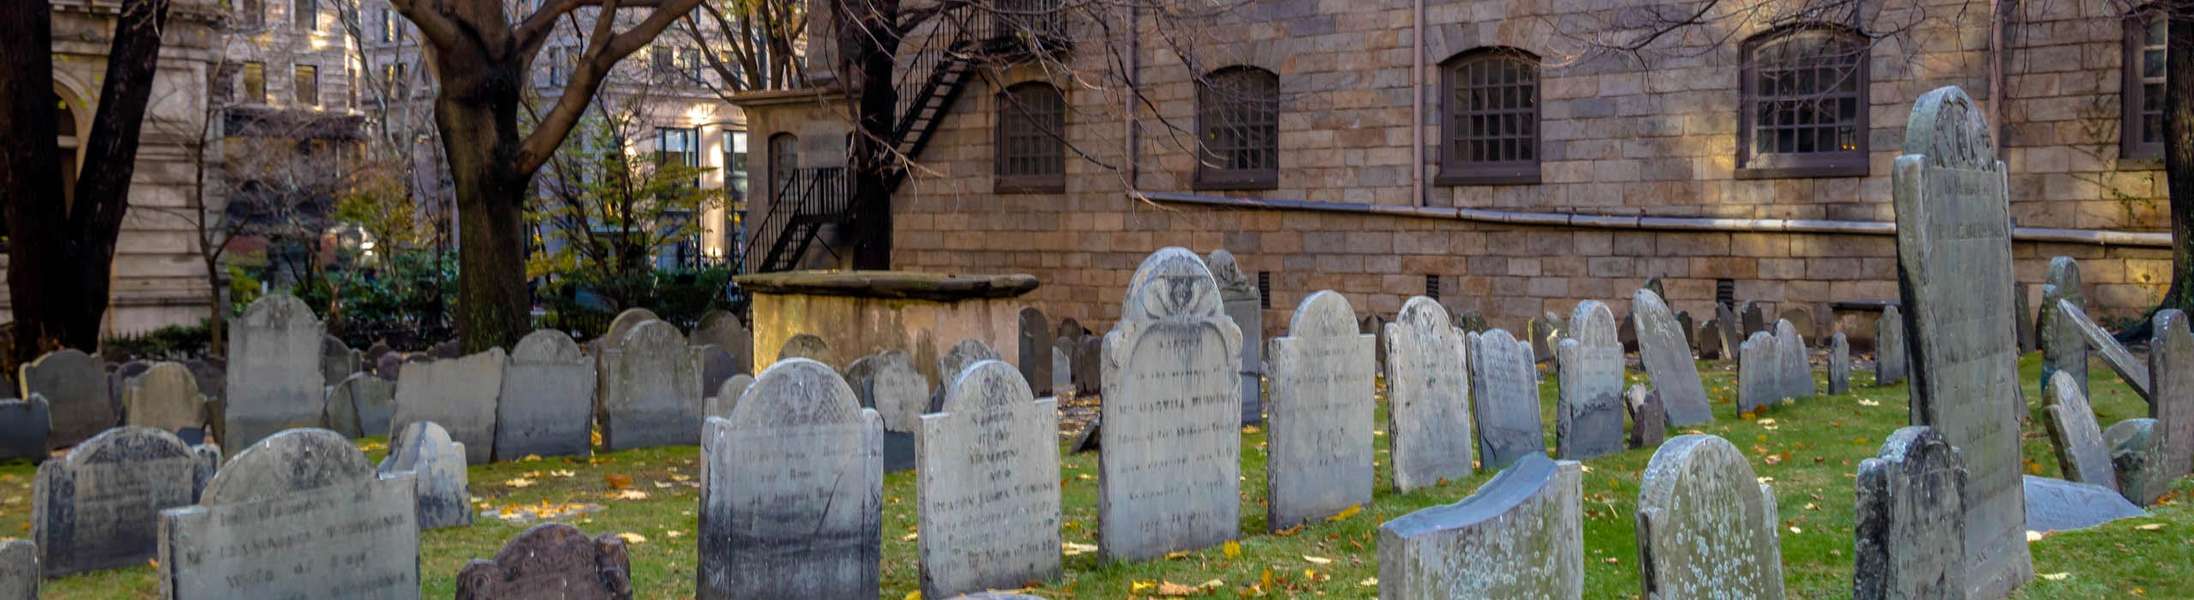 El Embrujado Cementerio King's Chapel, una de las paradas en nuestros Tours de Fantasmas en Boston